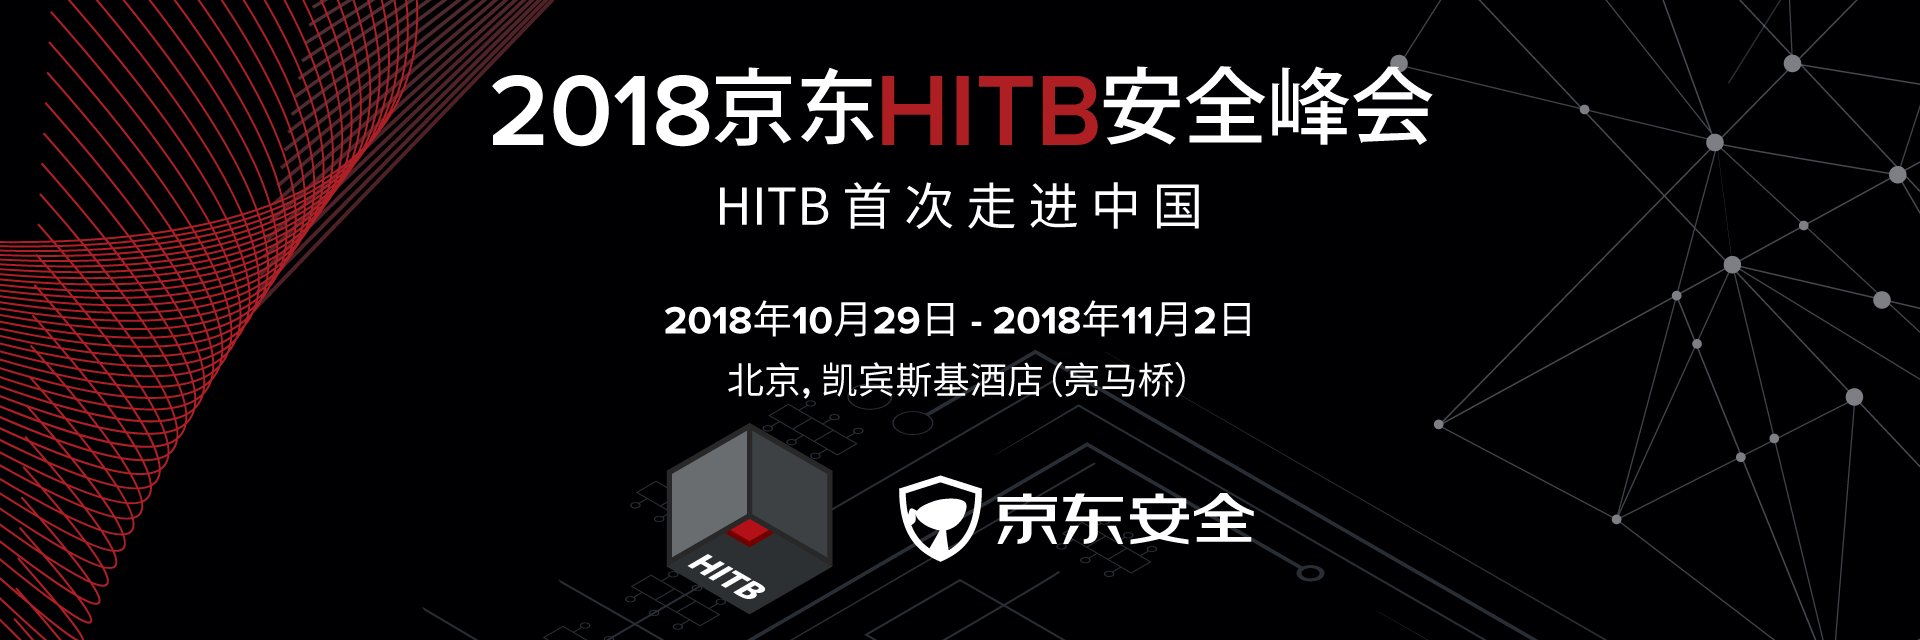 2018京东HITB安全峰会